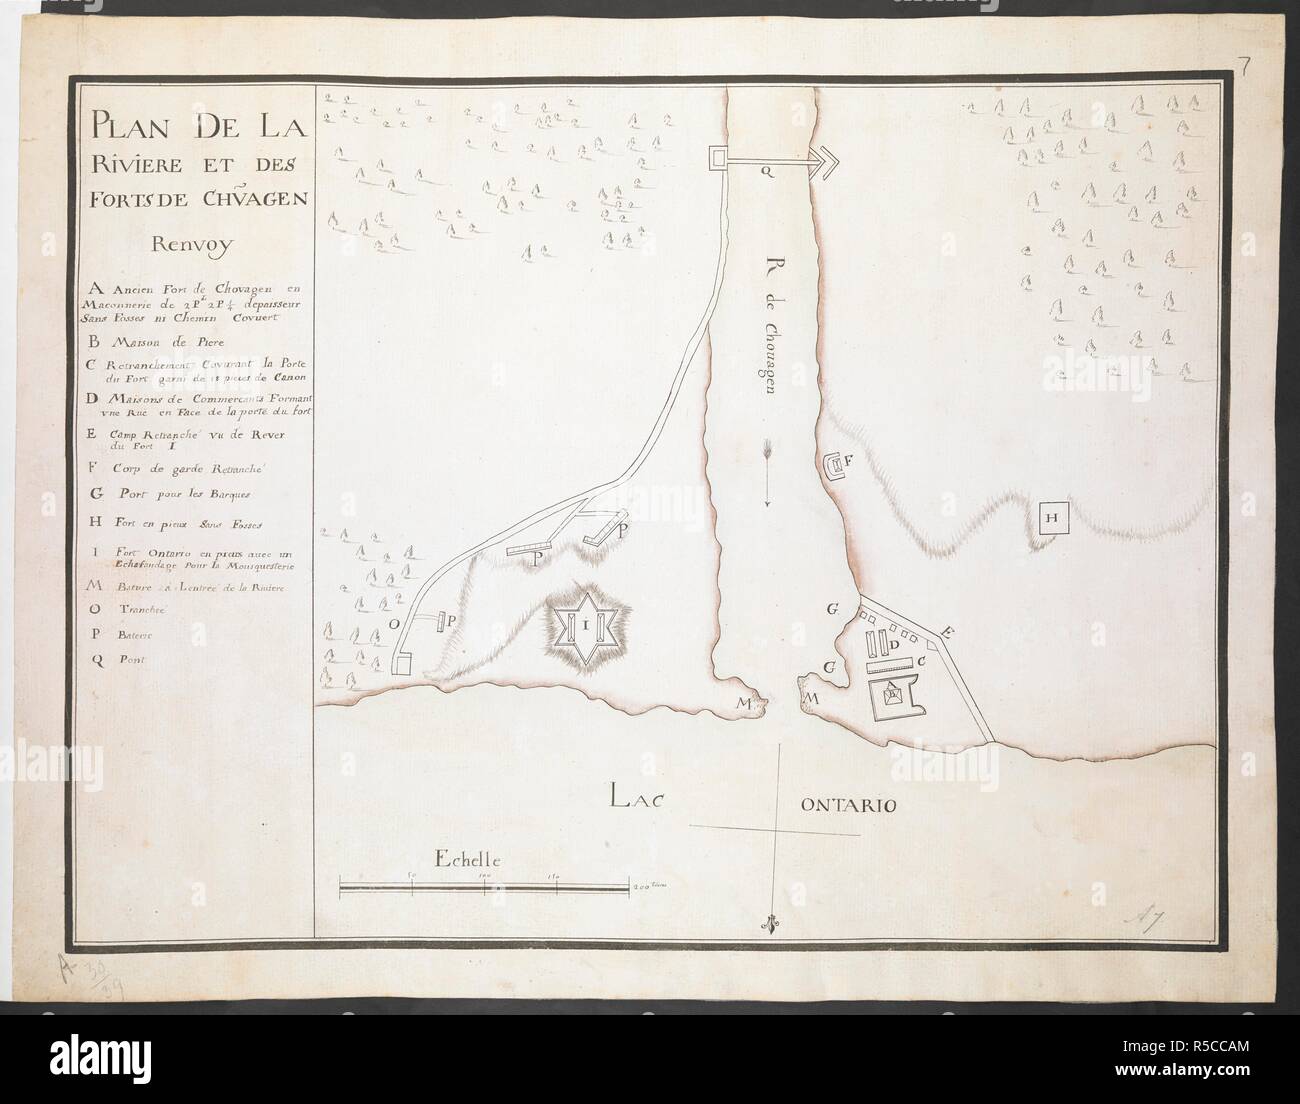 'Plan de la Riviere et des forts de Chouagen'. R.U.S.I. MAPS. Vol. LXXIII (1-13). 'Plan de la Riviere et des forts de Chouagen'. Mid 18th cent. Echelle, 200 toises' (= 120mm.). Map oriented with South at top. French. 360 x 480mm. Source: Add. 57708.7 Amherst no. A 7. R.U.S.I. no. A 30.39. Stock Photo